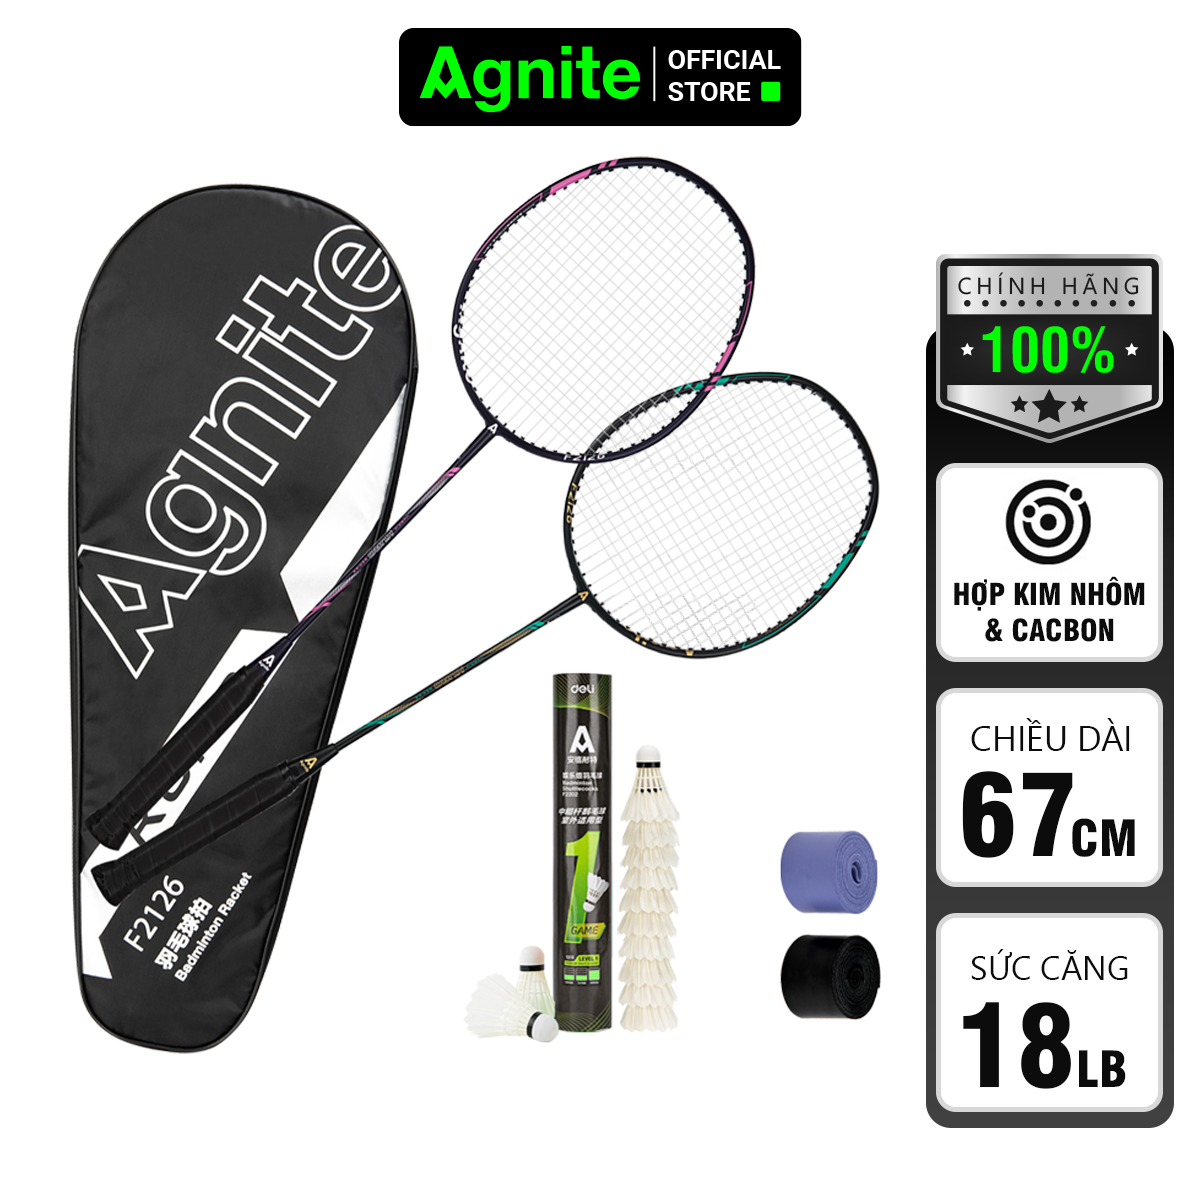 Bộ 2 vợt cầu lông cao cấp Agnite